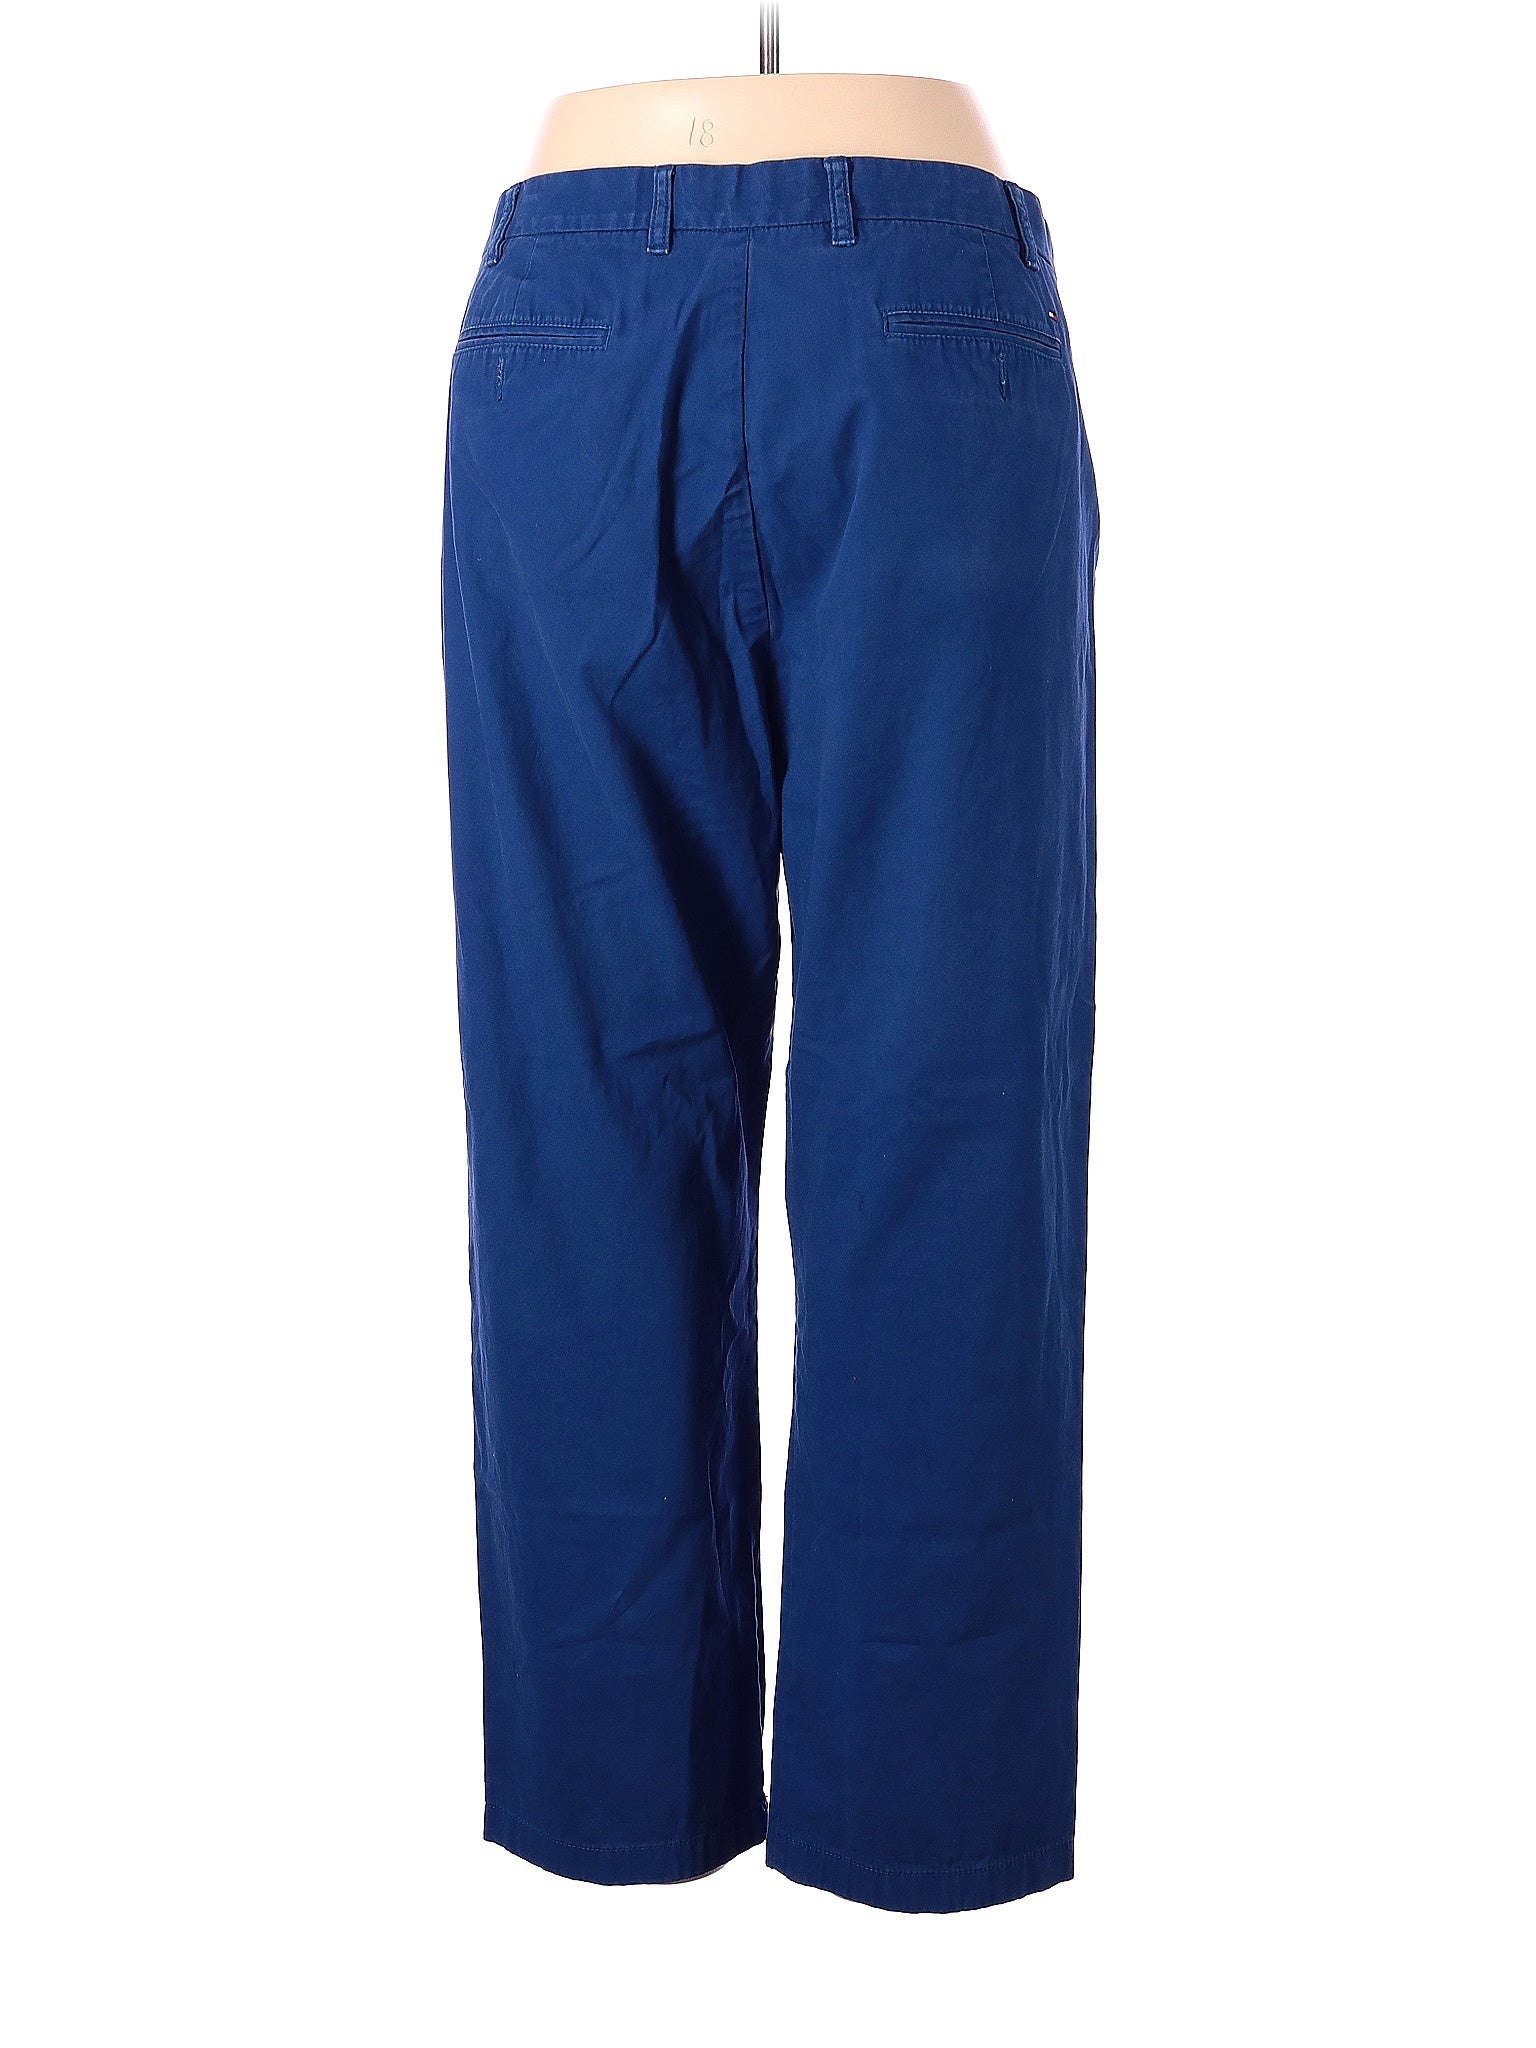 Khaki/Chino Pants size - 42 (W42 L30)